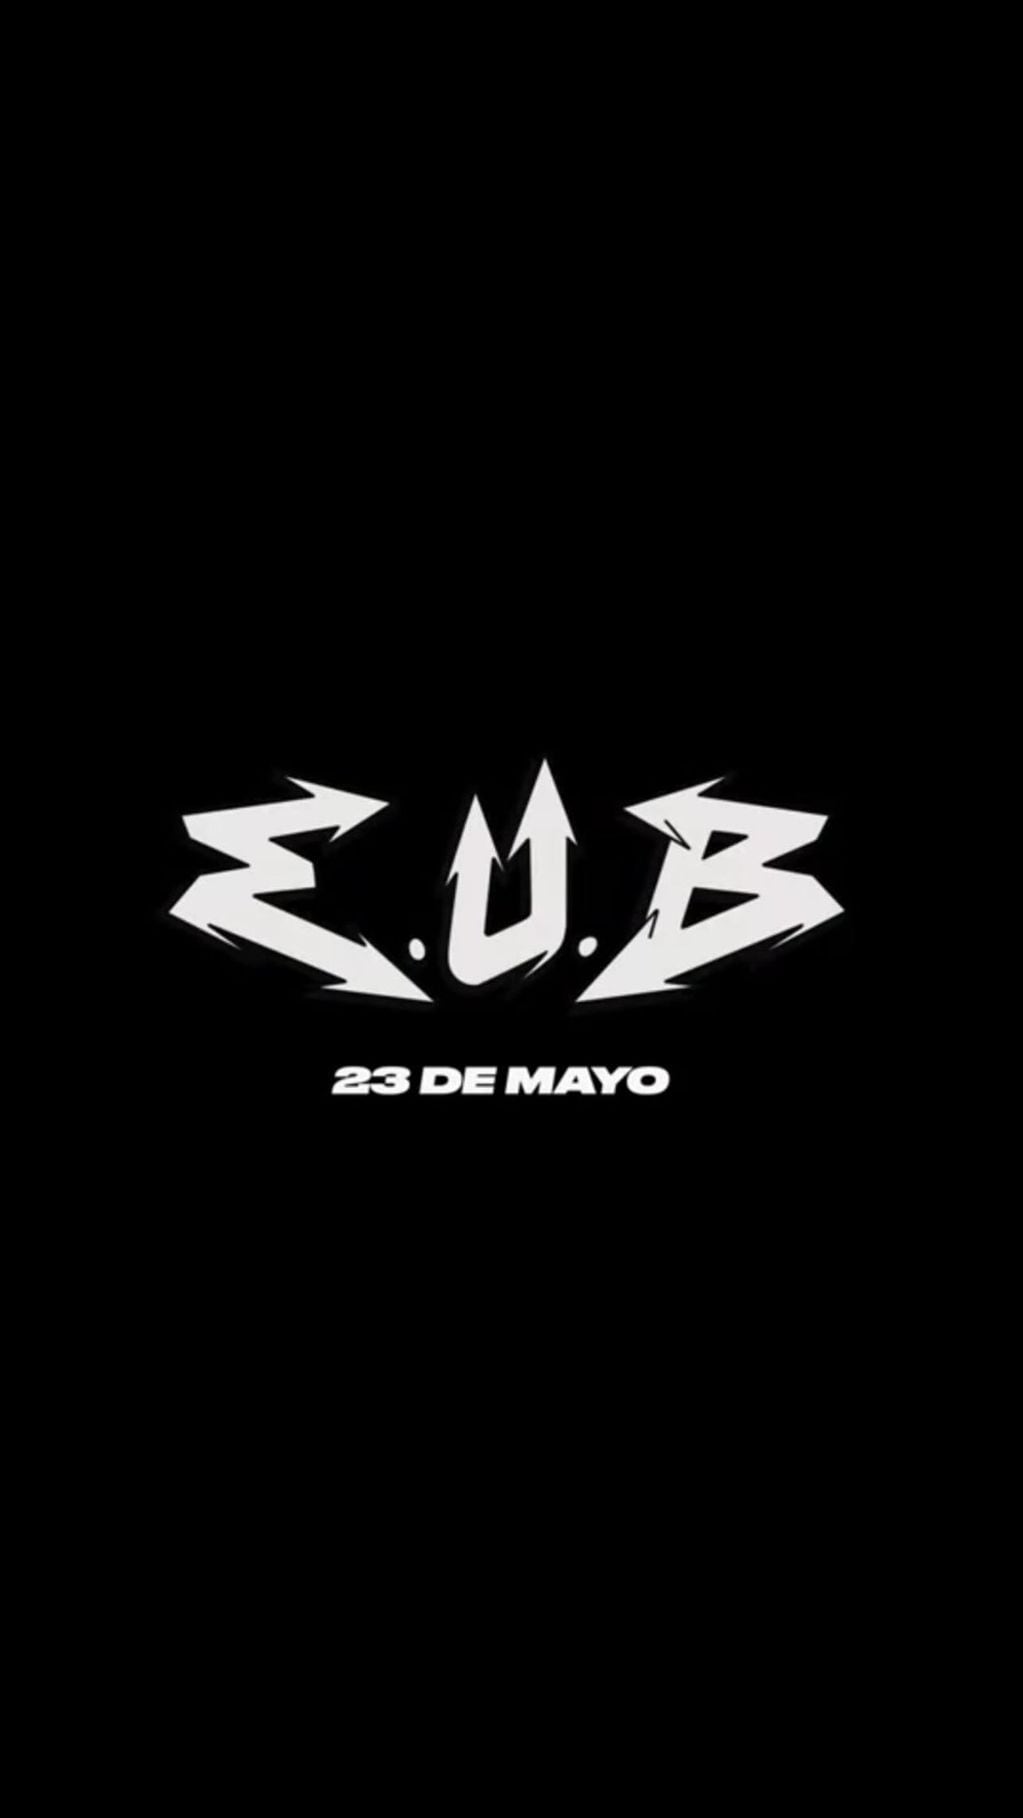 E.U.B., el nuevo álbum de Trueno se estrena el 23 de mayo